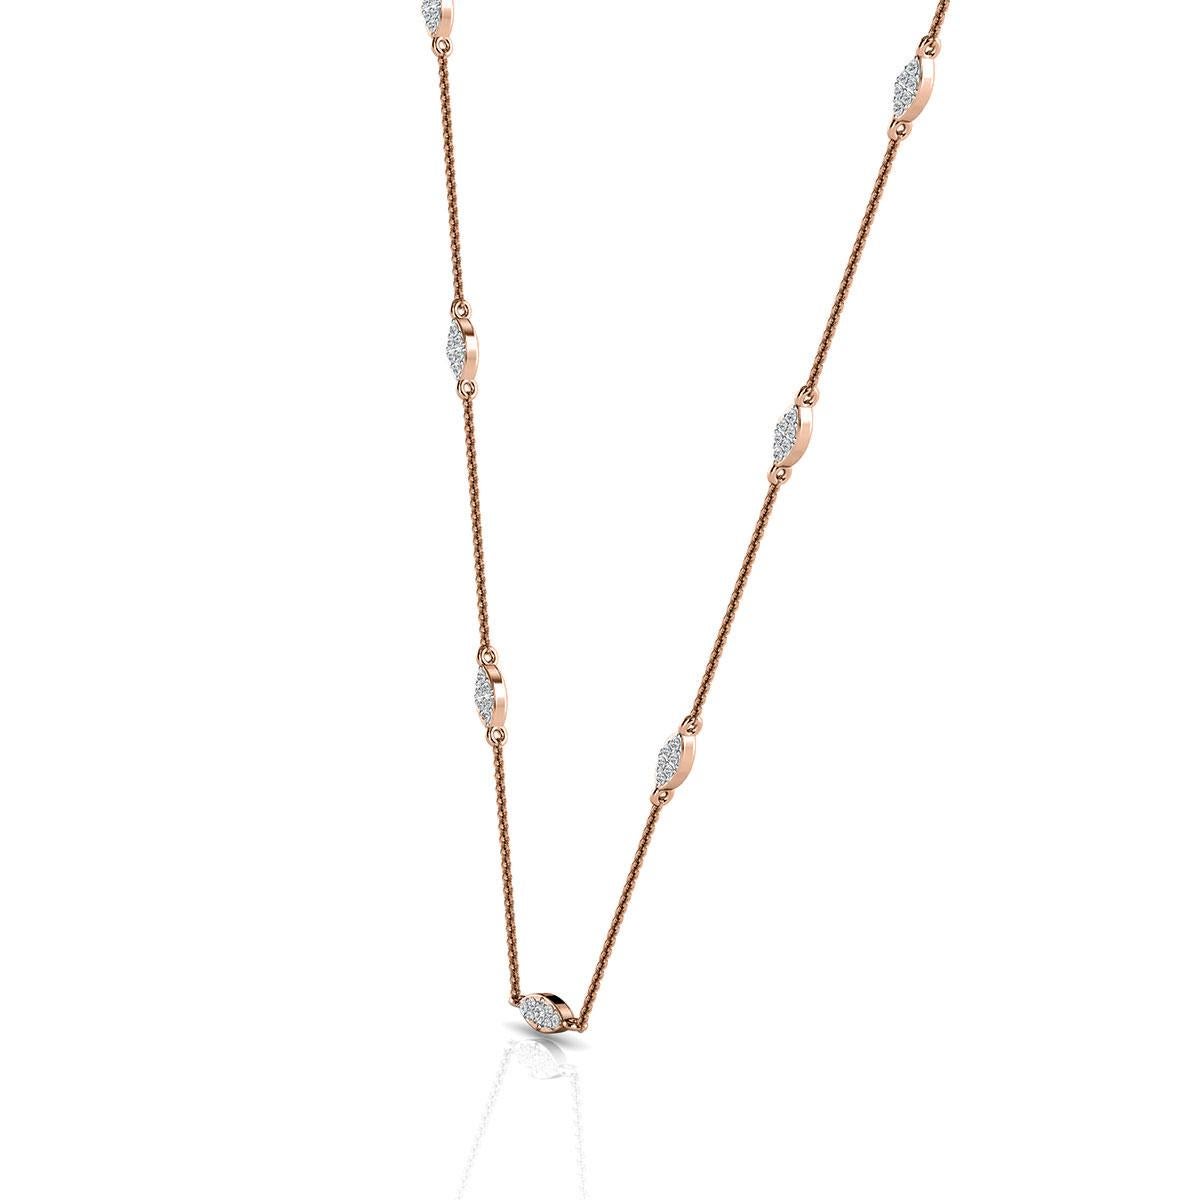 Diese zarte und elegante Halskette besteht aus runden Brillanten, die in sieben (7) Marquise-förmigen Stäben mit Mikrozähnen gefasst sind. Erleben Sie den Unterschied!

Einzelheiten zum Produkt: 

Zentrum Edelstein Typ: NATURDIAMANT
Farbe des